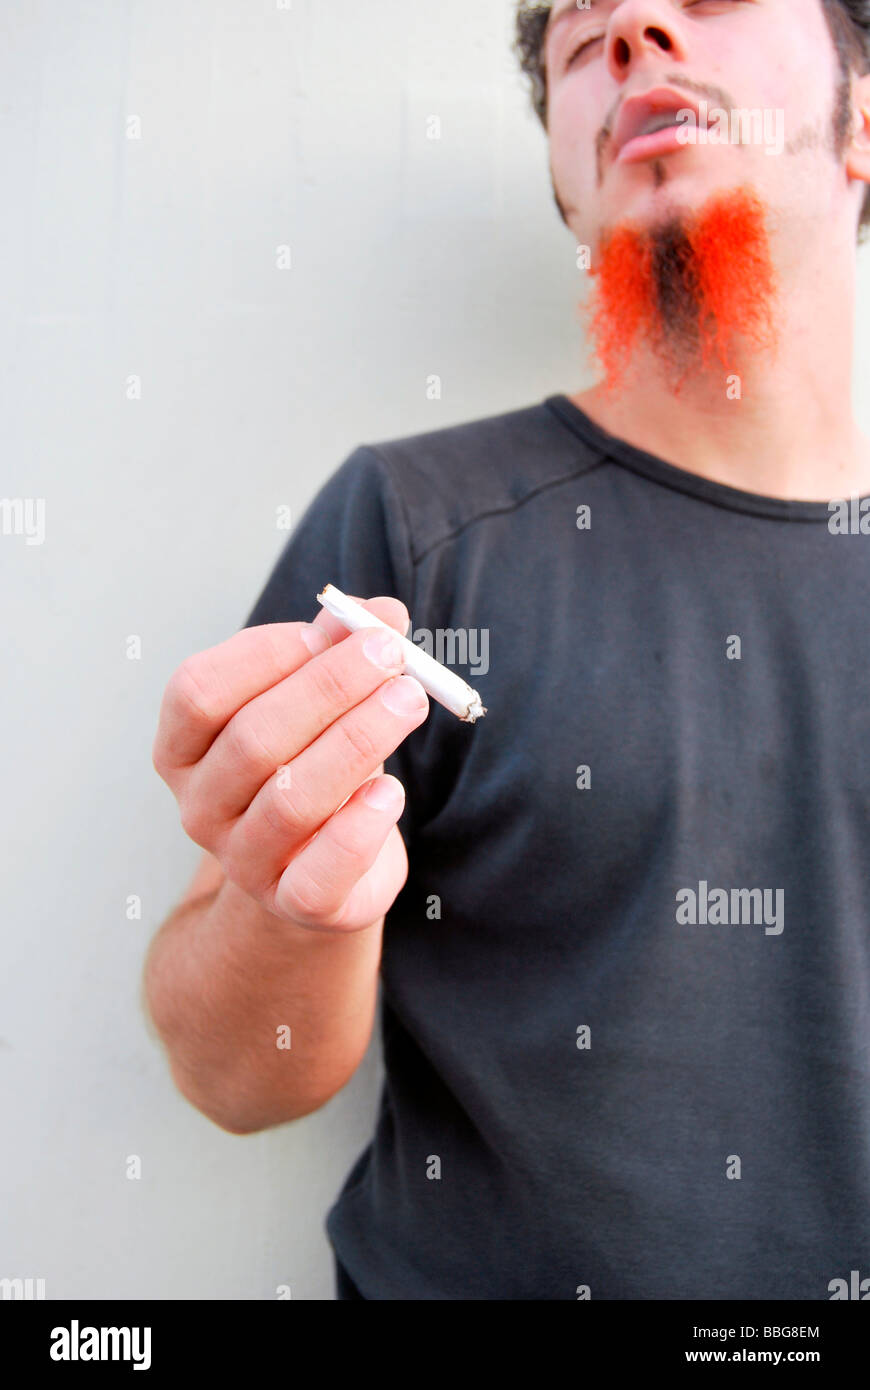 Médicaments, jeune homme avec barbe rouge-noir tenant un joint, cigarette roulée à la main Banque D'Images